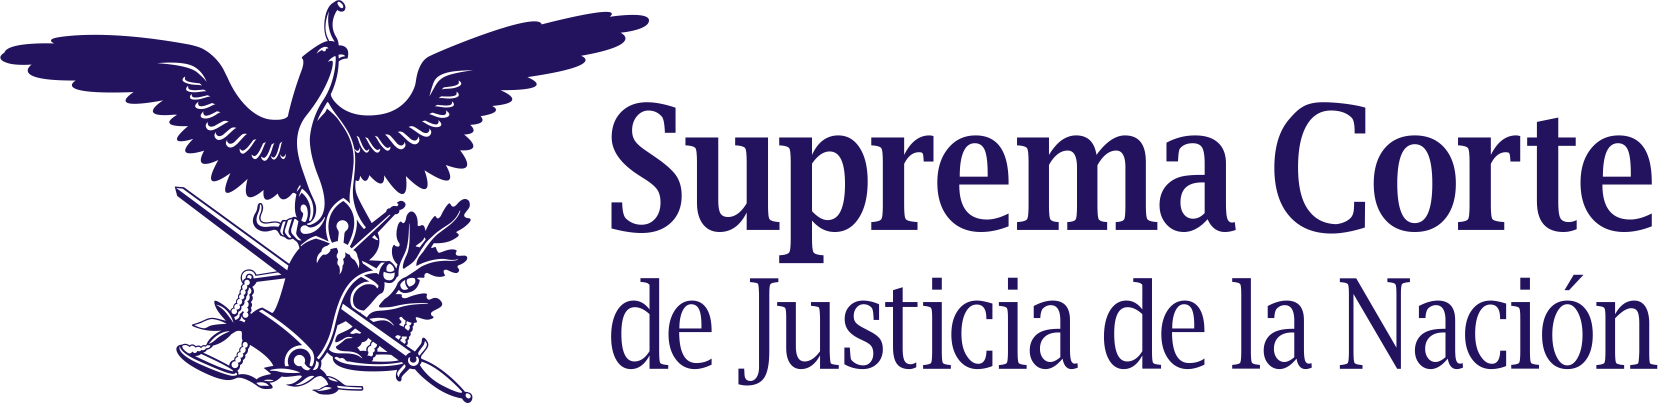 Club Cañada y Suprema Corte de Justicia de la Nación